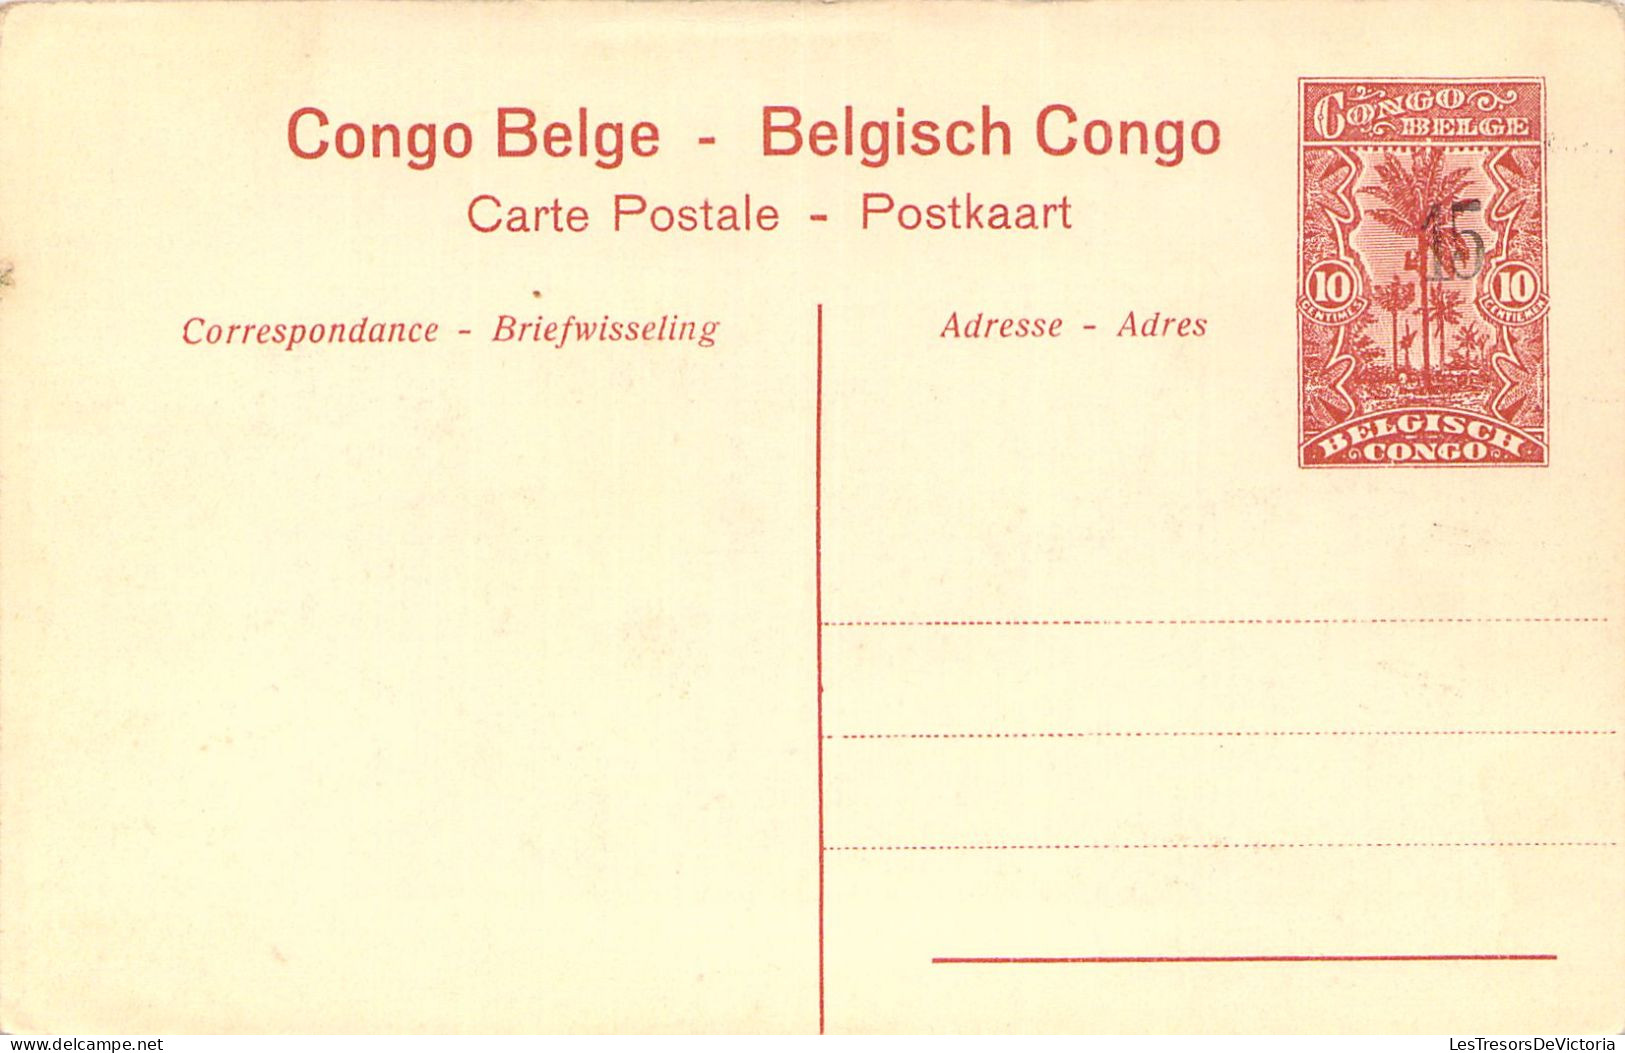 CONGO BELGE - Stanley Falls - Un Village - Carte Postale Ancienne - Belgisch-Kongo